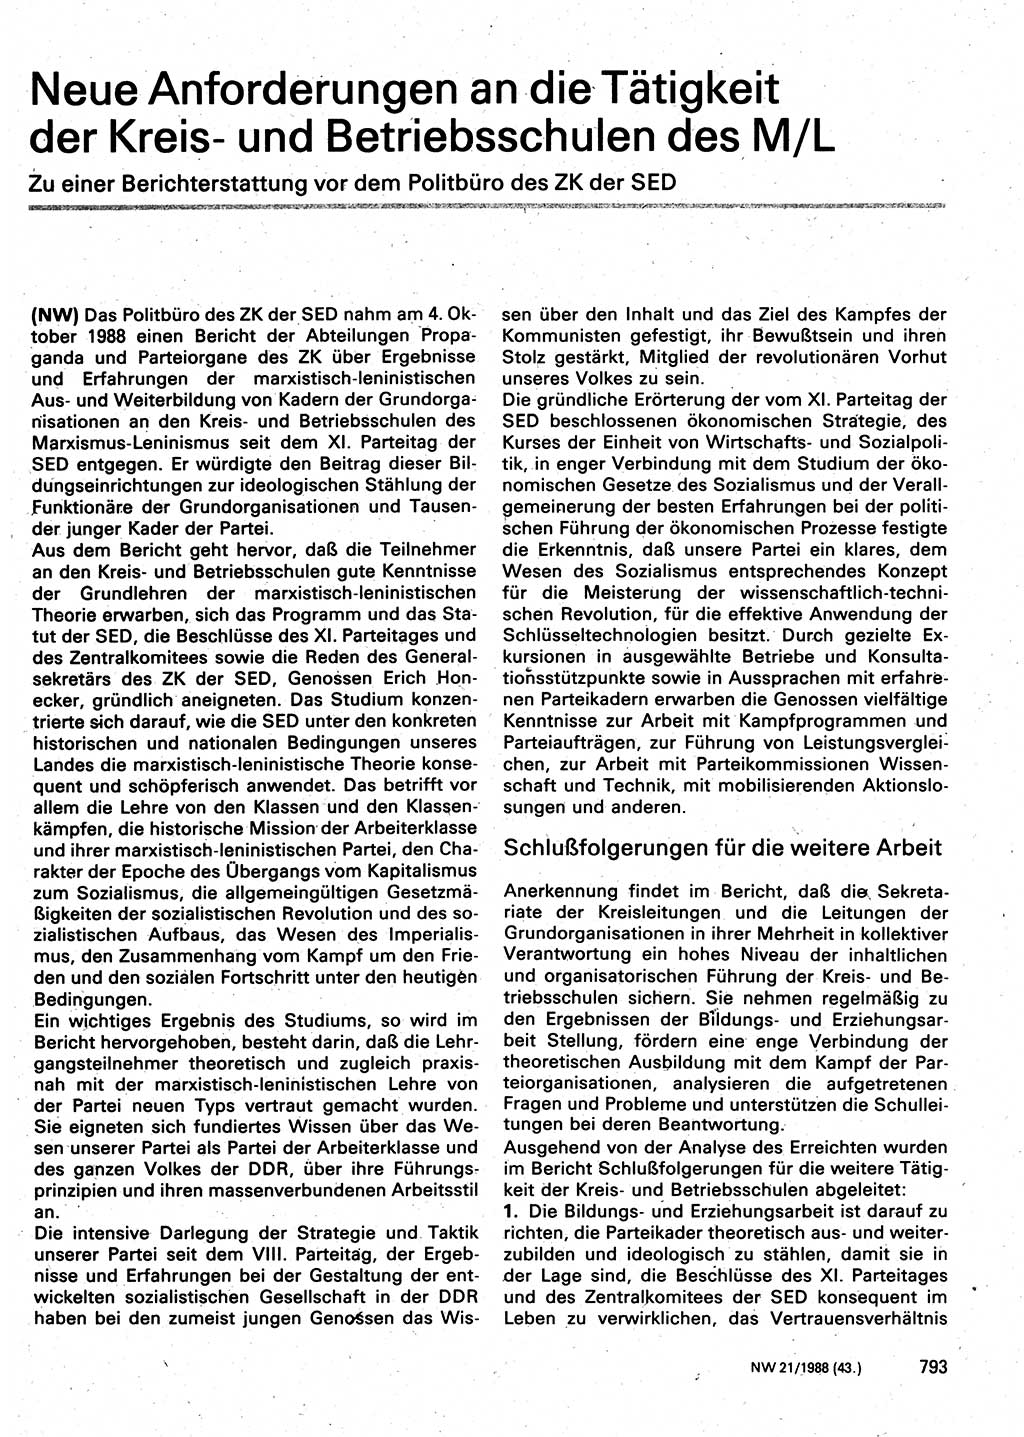 Neuer Weg (NW), Organ des Zentralkomitees (ZK) der SED (Sozialistische Einheitspartei Deutschlands) für Fragen des Parteilebens, 43. Jahrgang [Deutsche Demokratische Republik (DDR)] 1988, Seite 793 (NW ZK SED DDR 1988, S. 793)